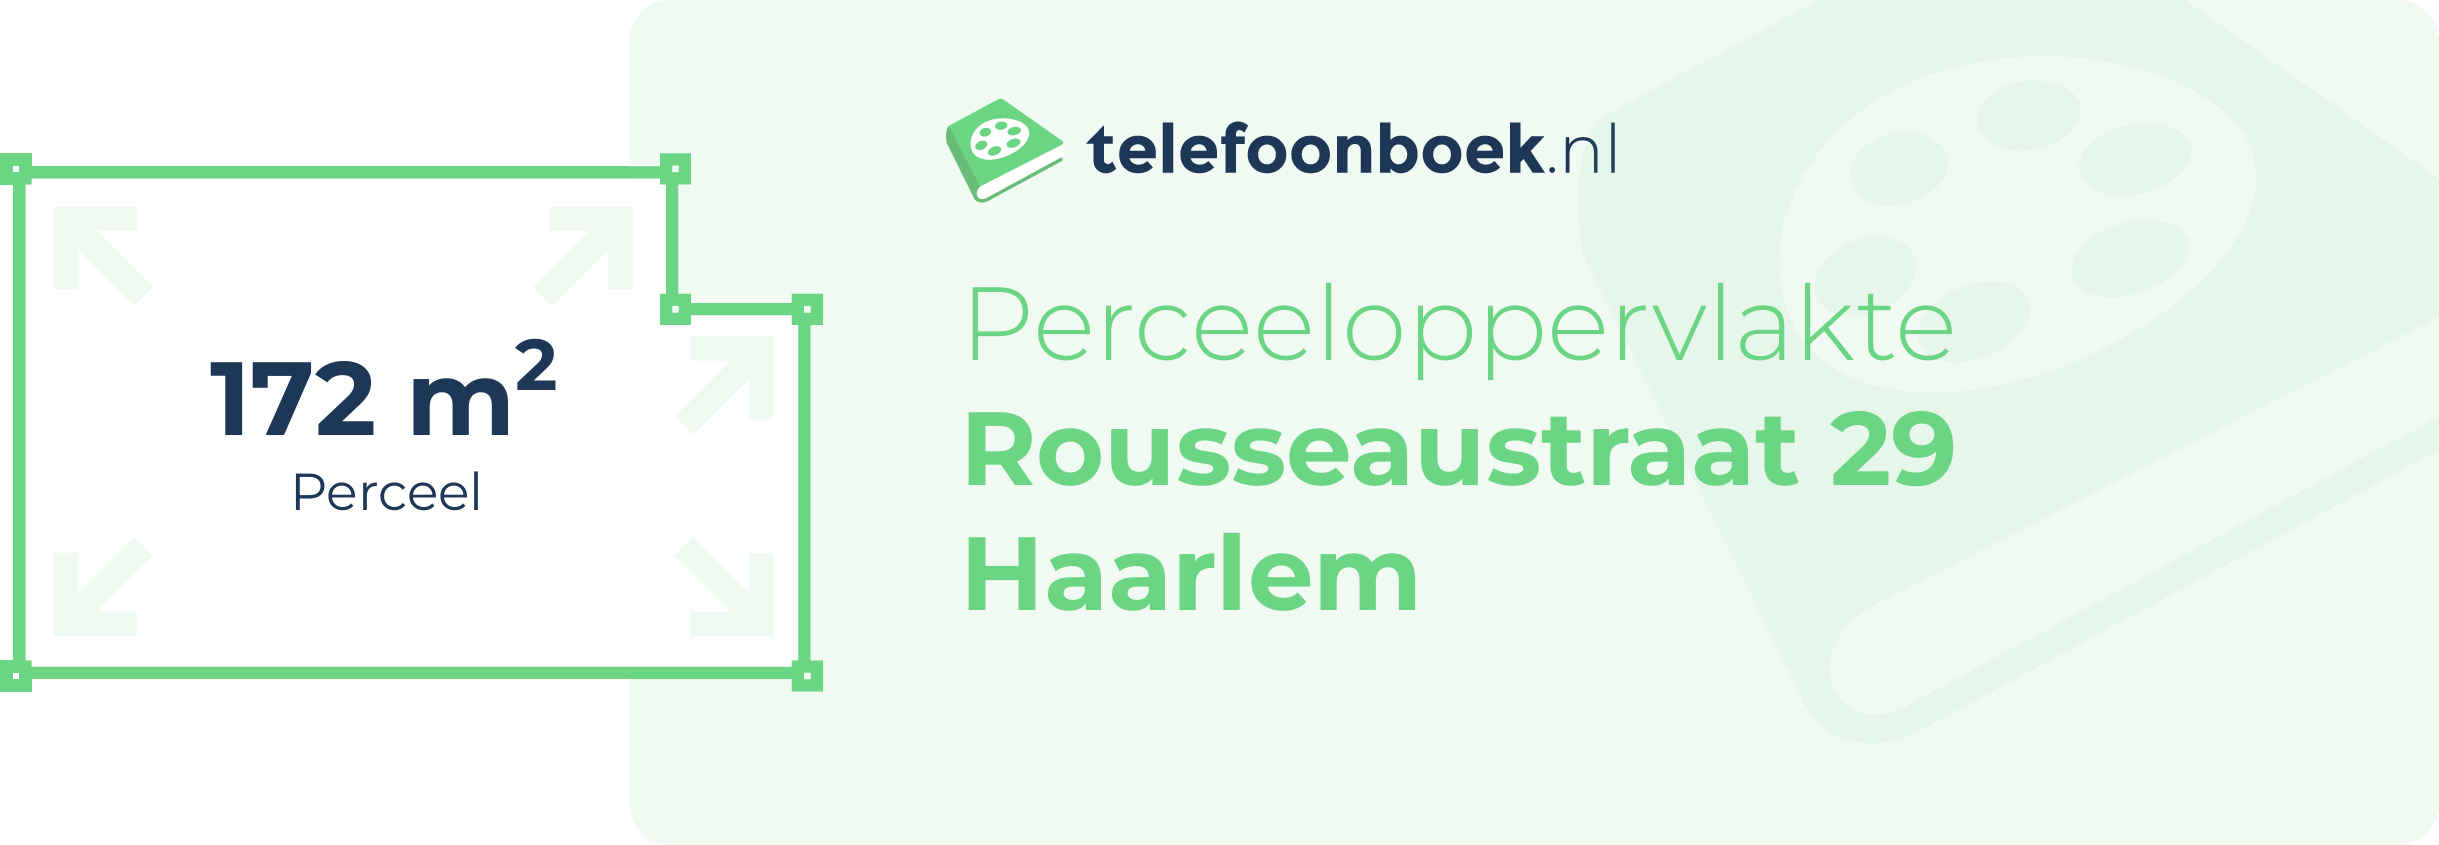 Perceeloppervlakte Rousseaustraat 29 Haarlem